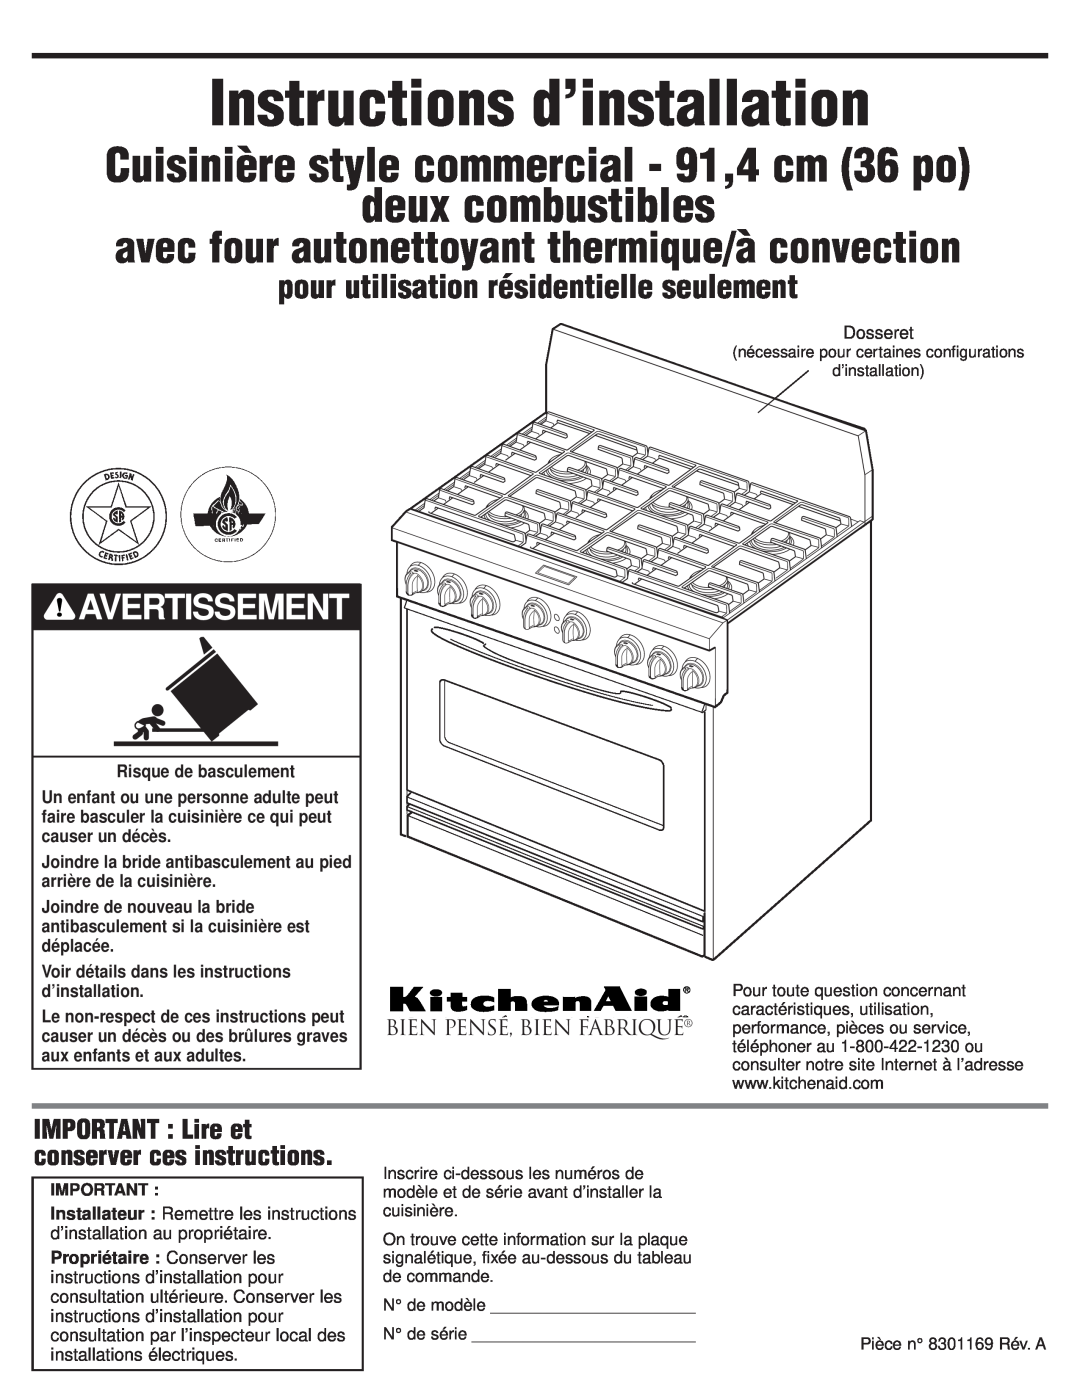 KitchenAid 8301169 Instructions d’installation, Cuisinière style commercial - 91,4 cm 36 po, deux combustibles 